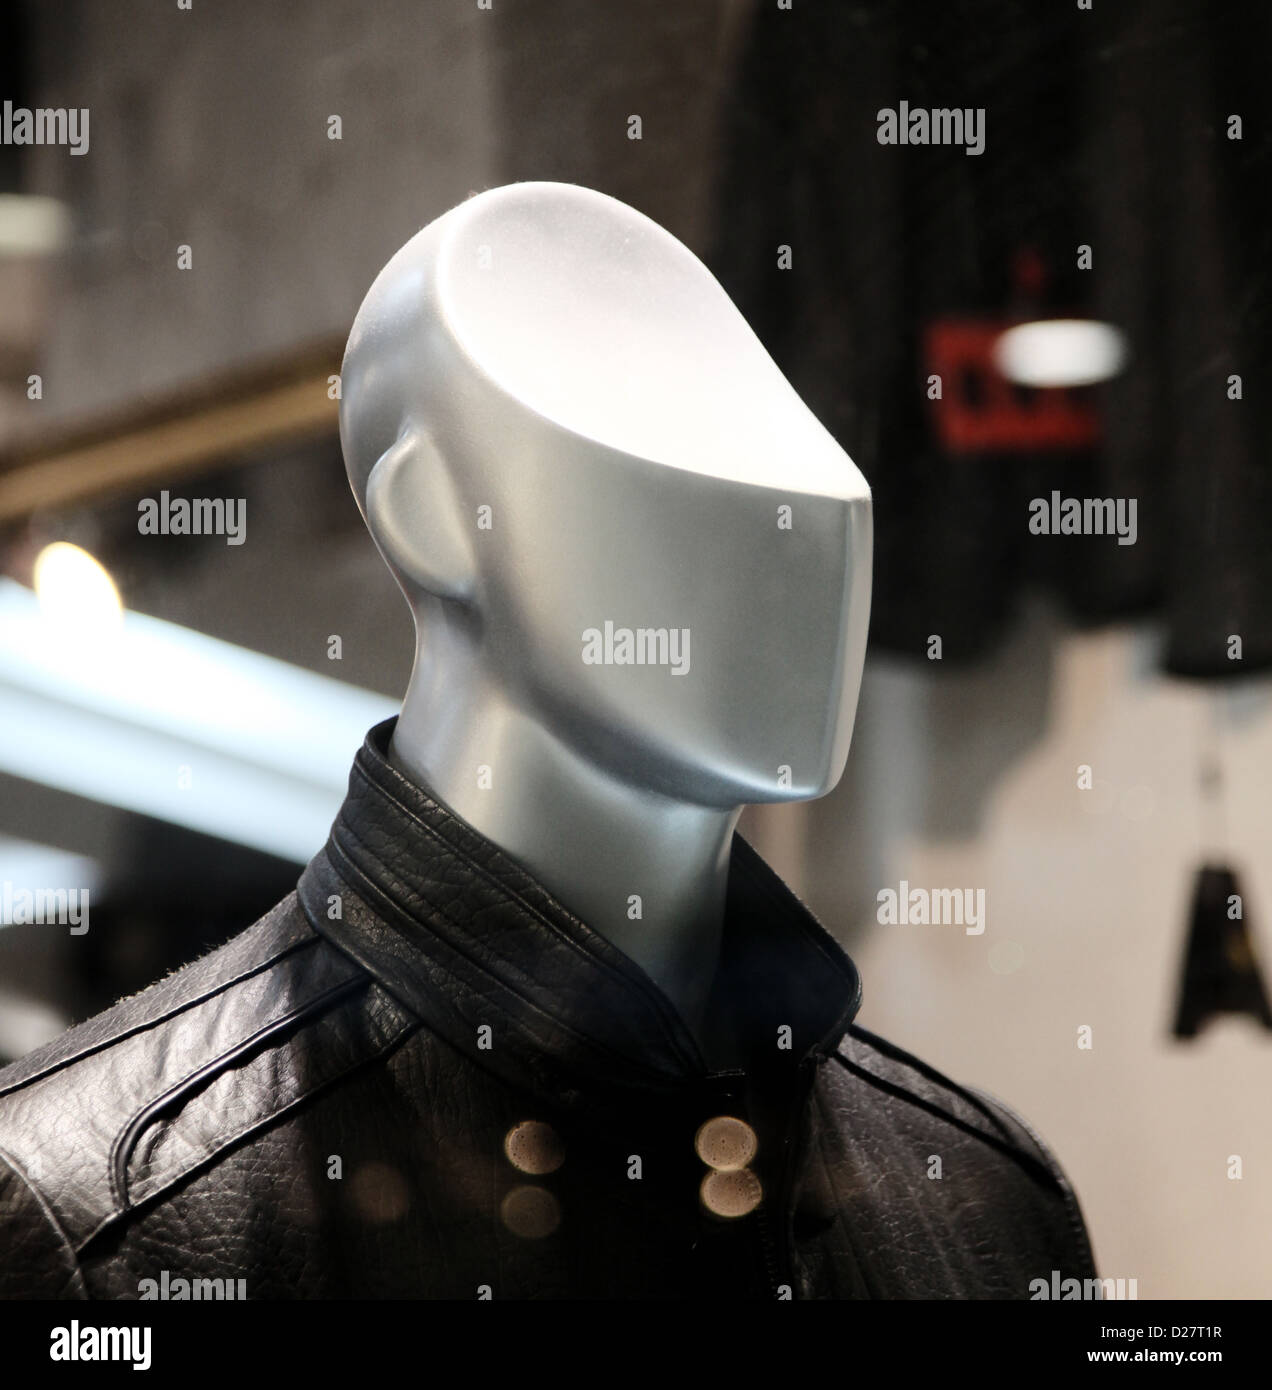 Si tratta di una foto di una chiusura di un maschio modello di plastica in un negozio di moda finestra. La testa è tagliata come nessun cervello. Foto Stock